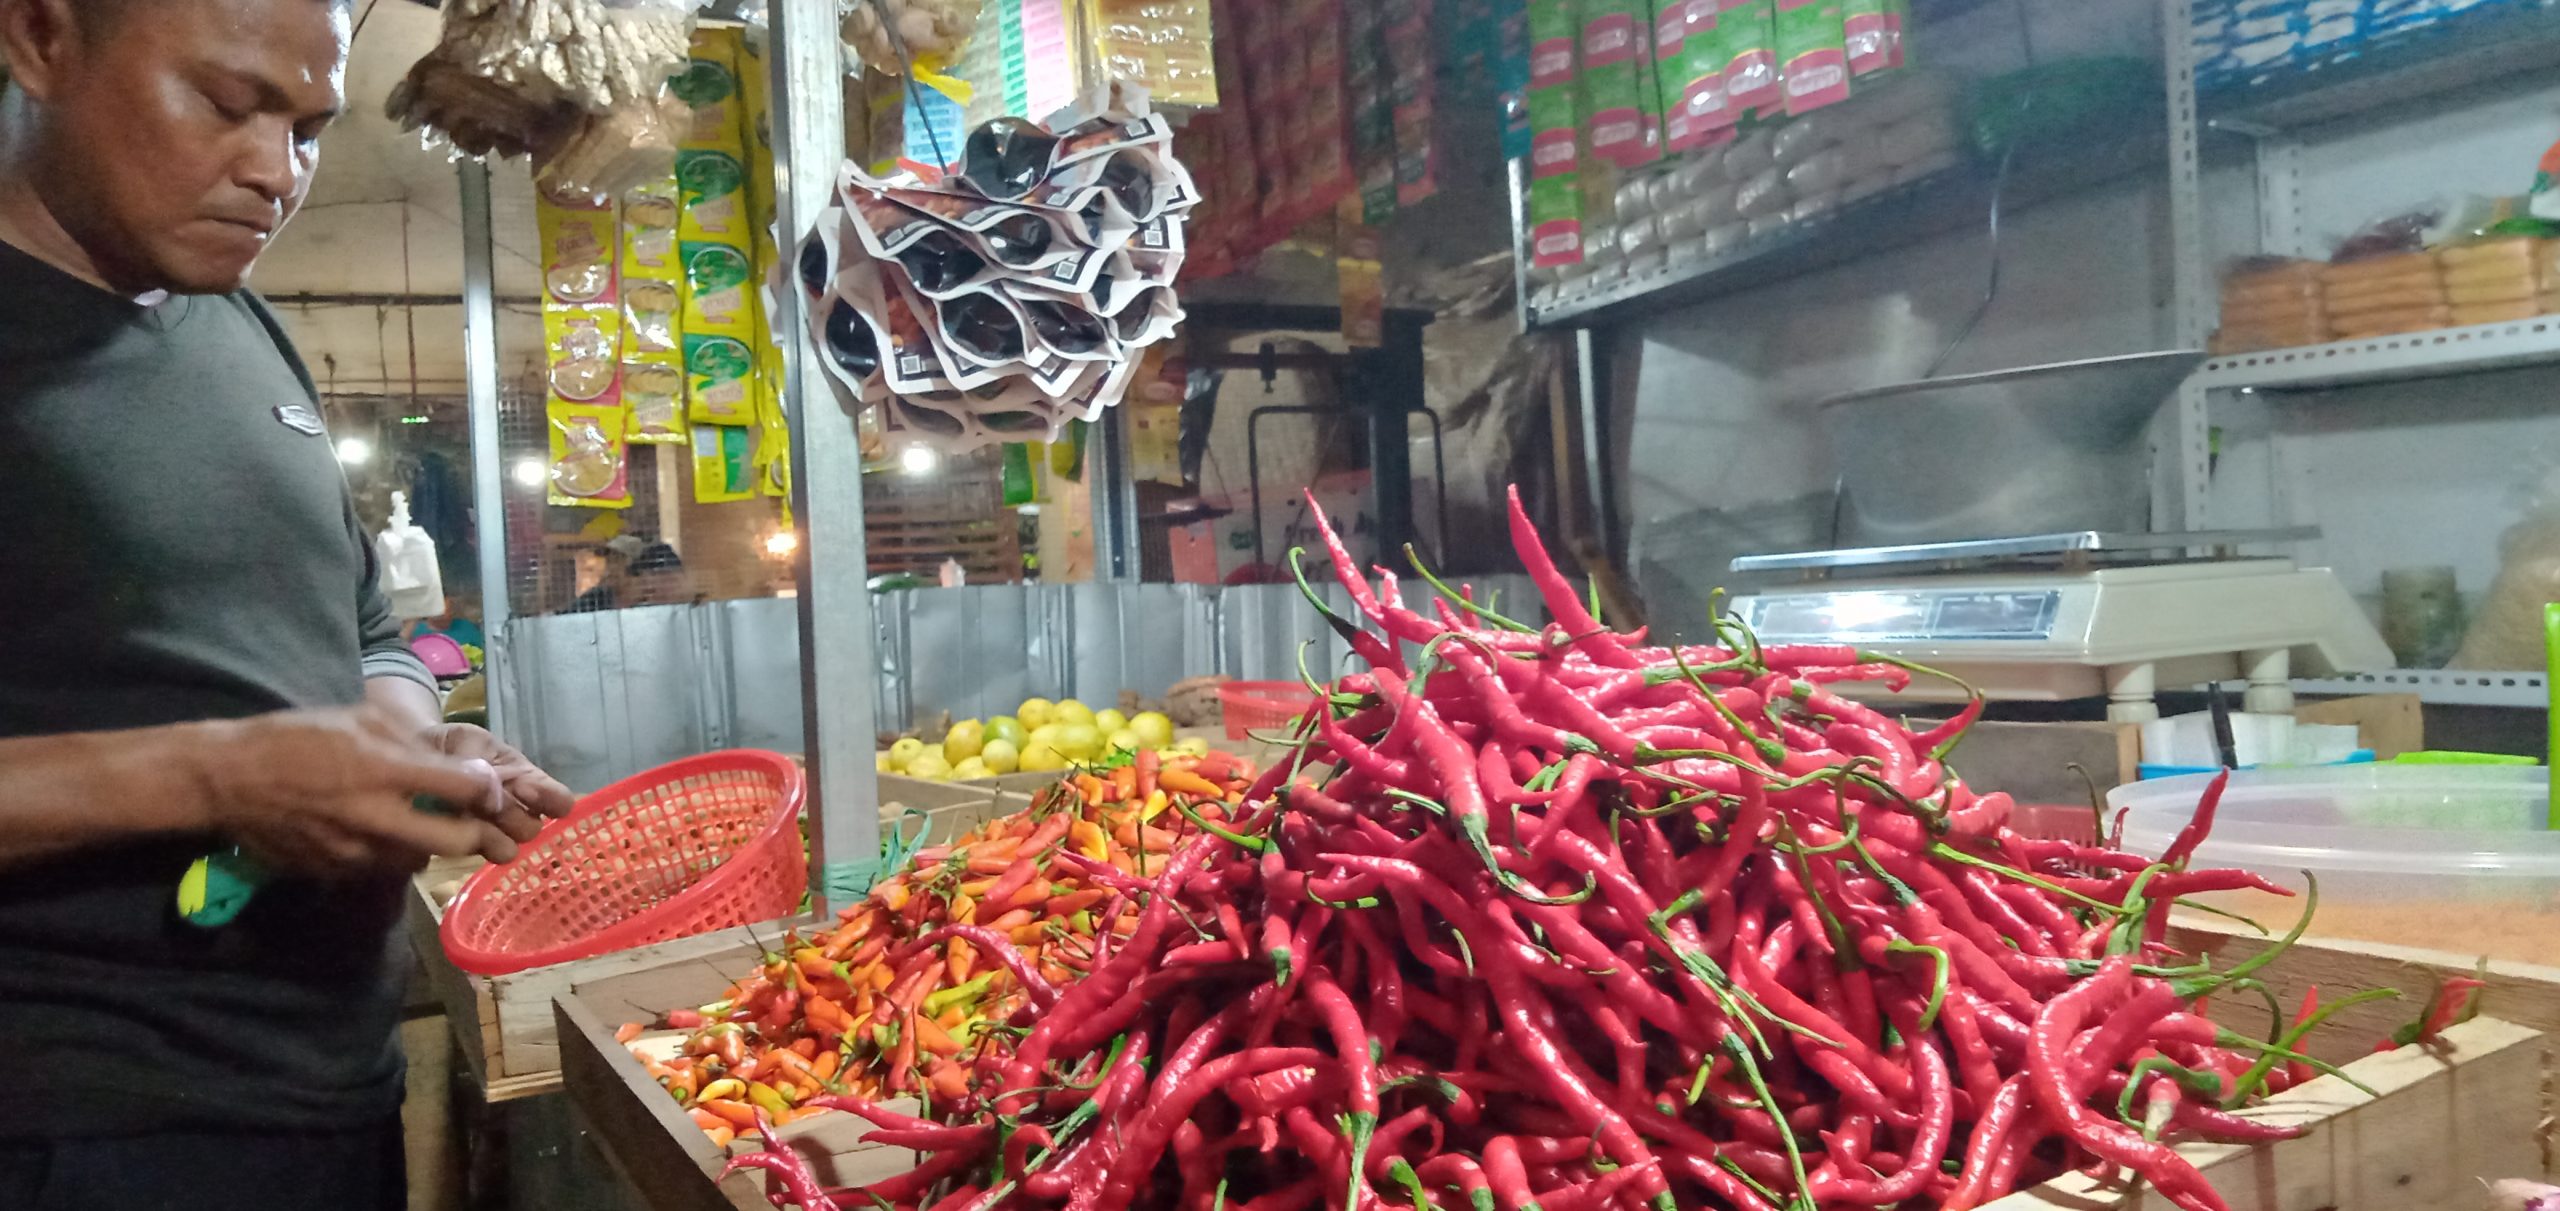 Pengunjung Pasar Sepi, Pedagang: Penghasilan Sekarang Hanya Cukup untuk Makan Sehari-hari